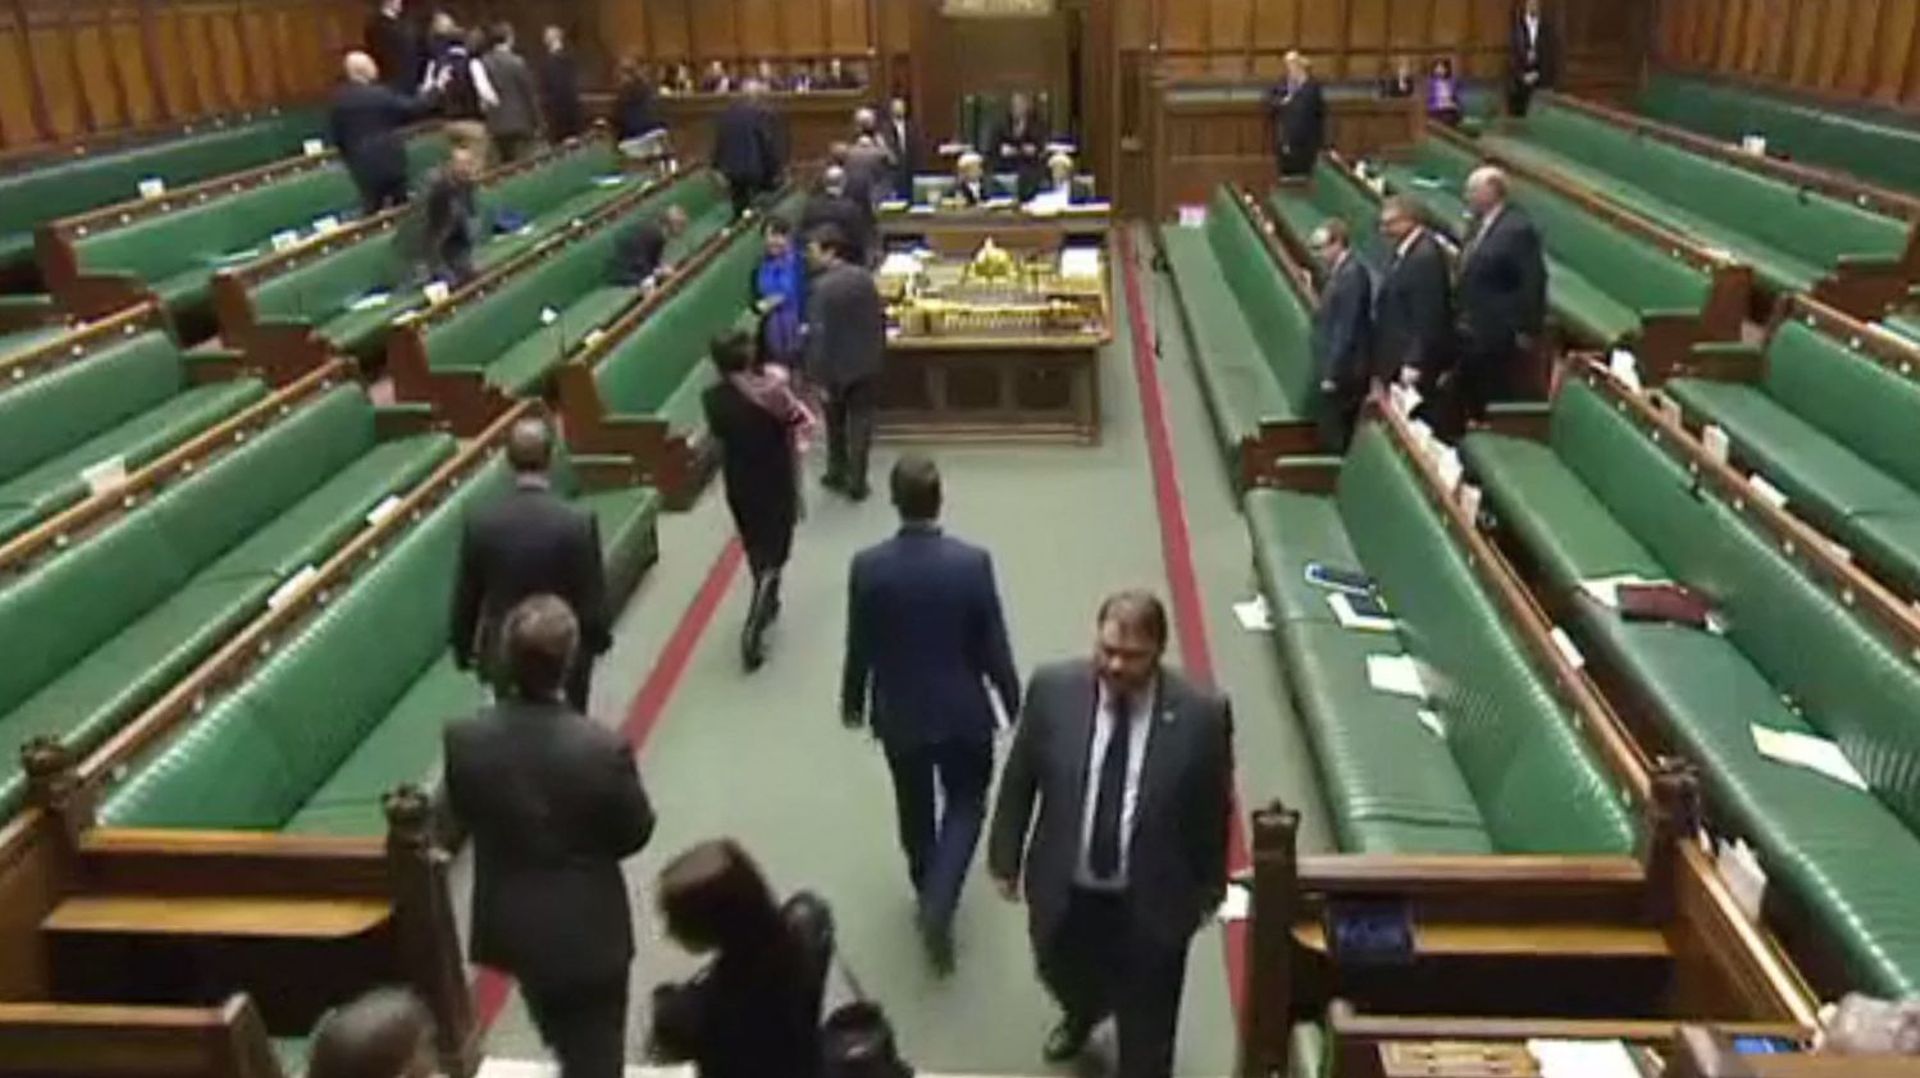 La députée conservatrice Chloe Smith marche avec son bébé dans les bras pour aller voter, alors que le gouvernement May fait passer une législation sur le Brexit au Parlement en 2018